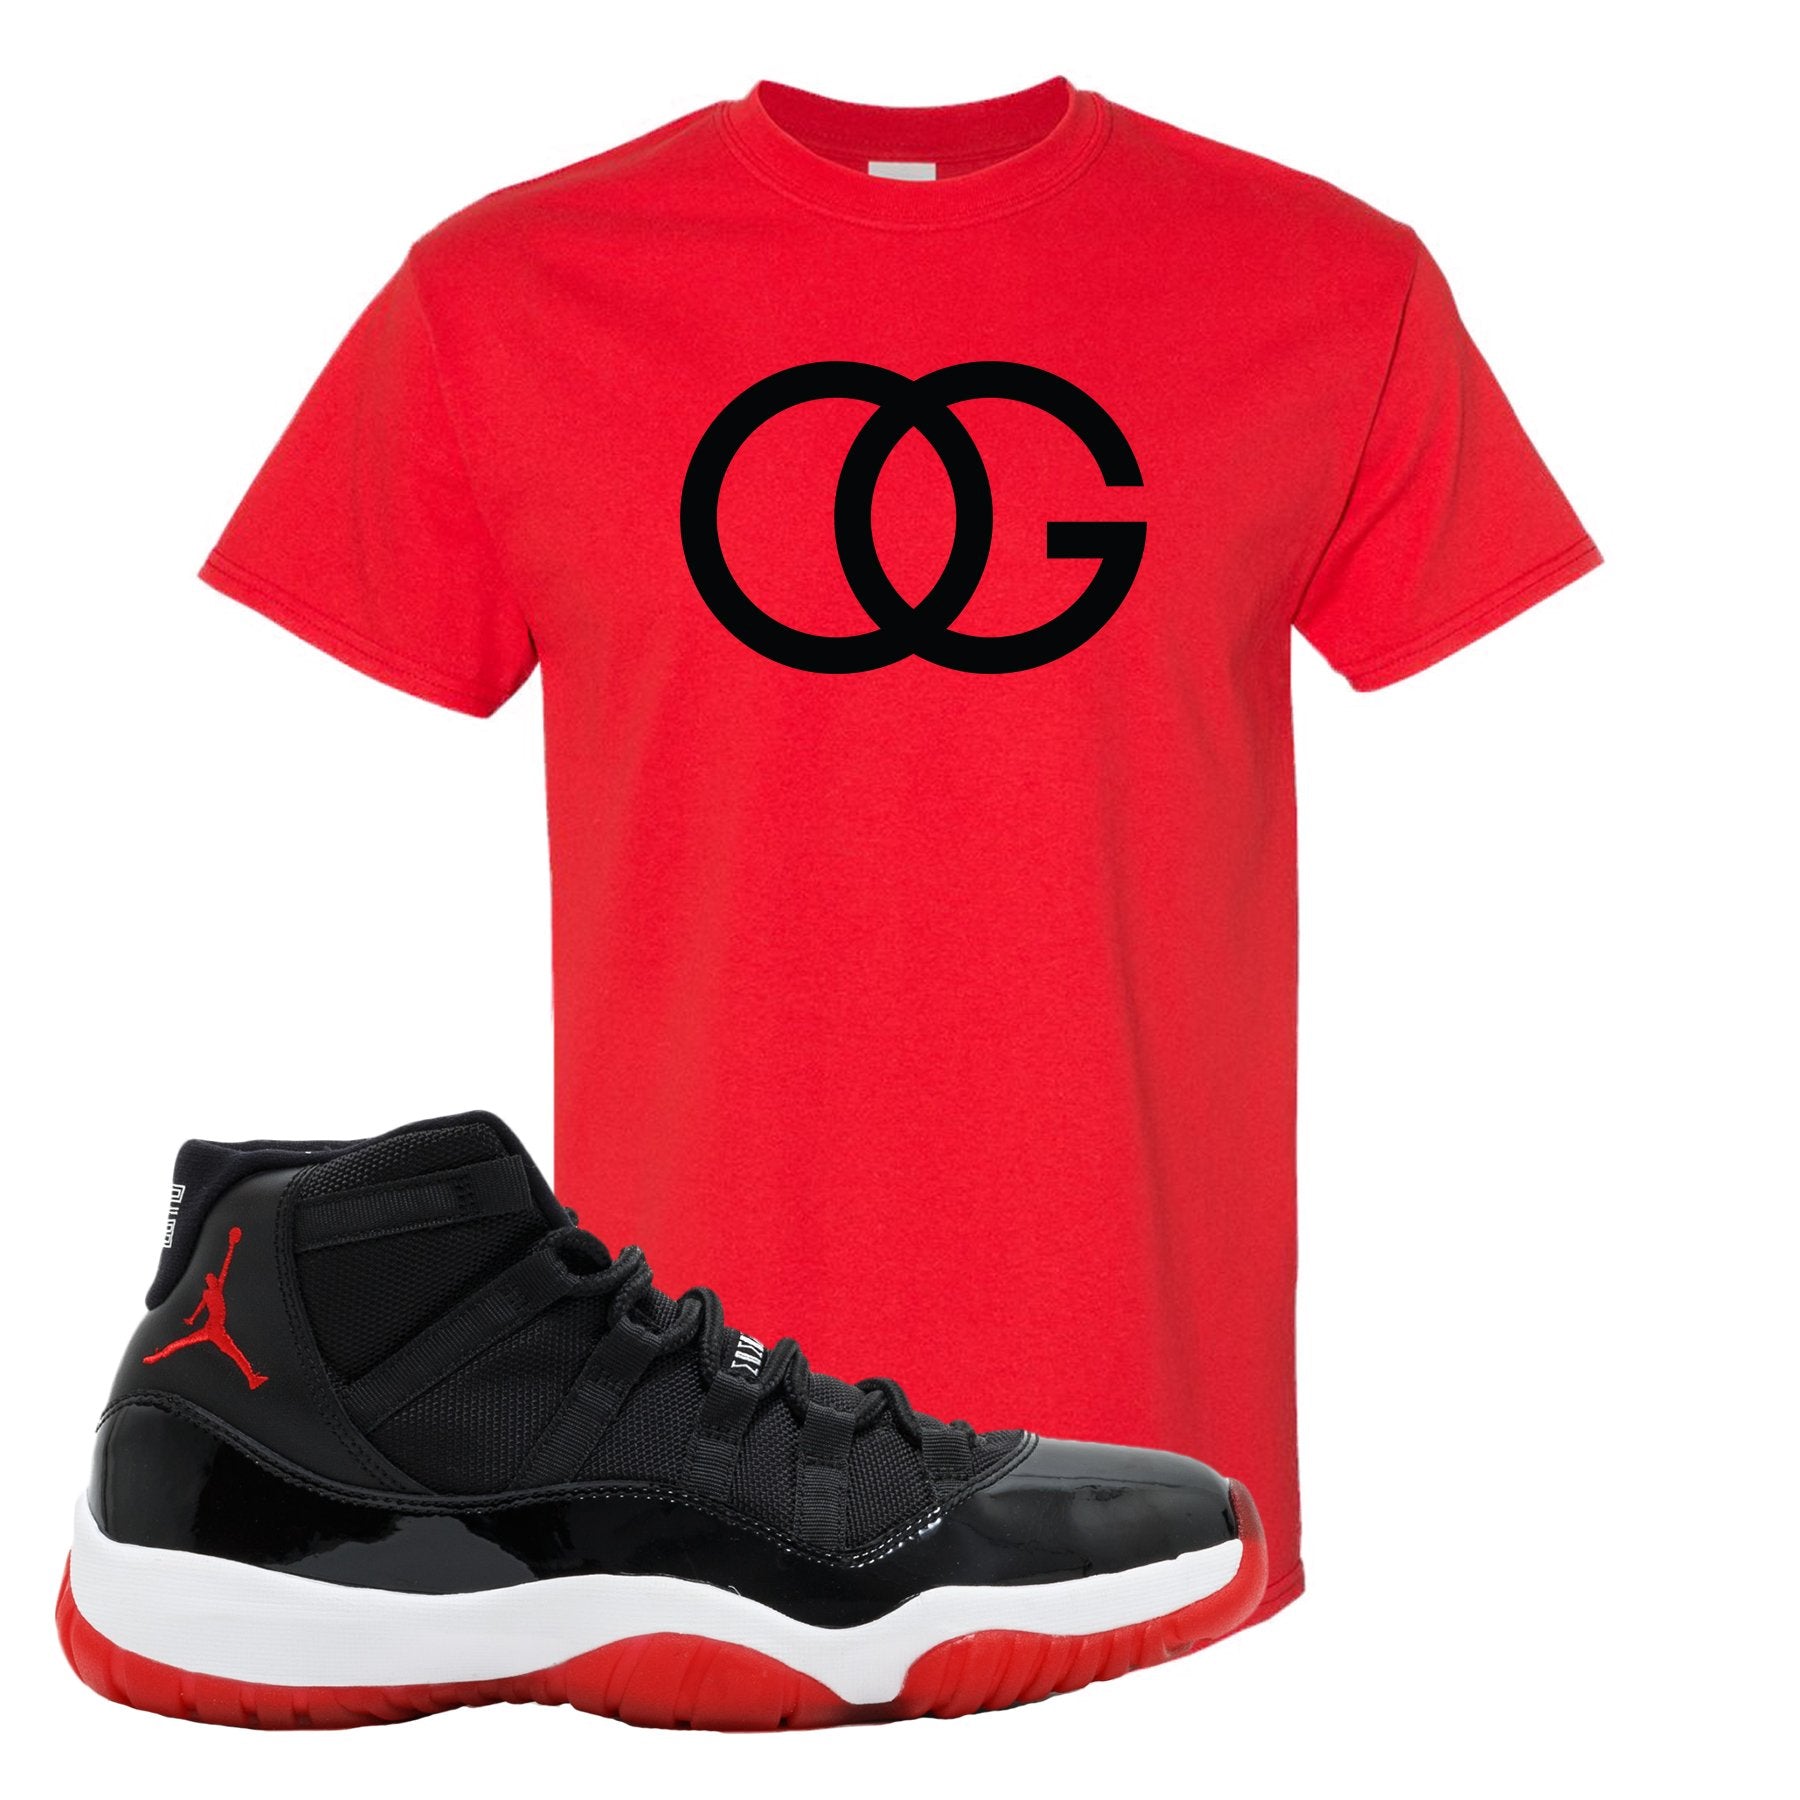 Jordan 11 Bred OG Red Sneaker Hook Up T-Shirt